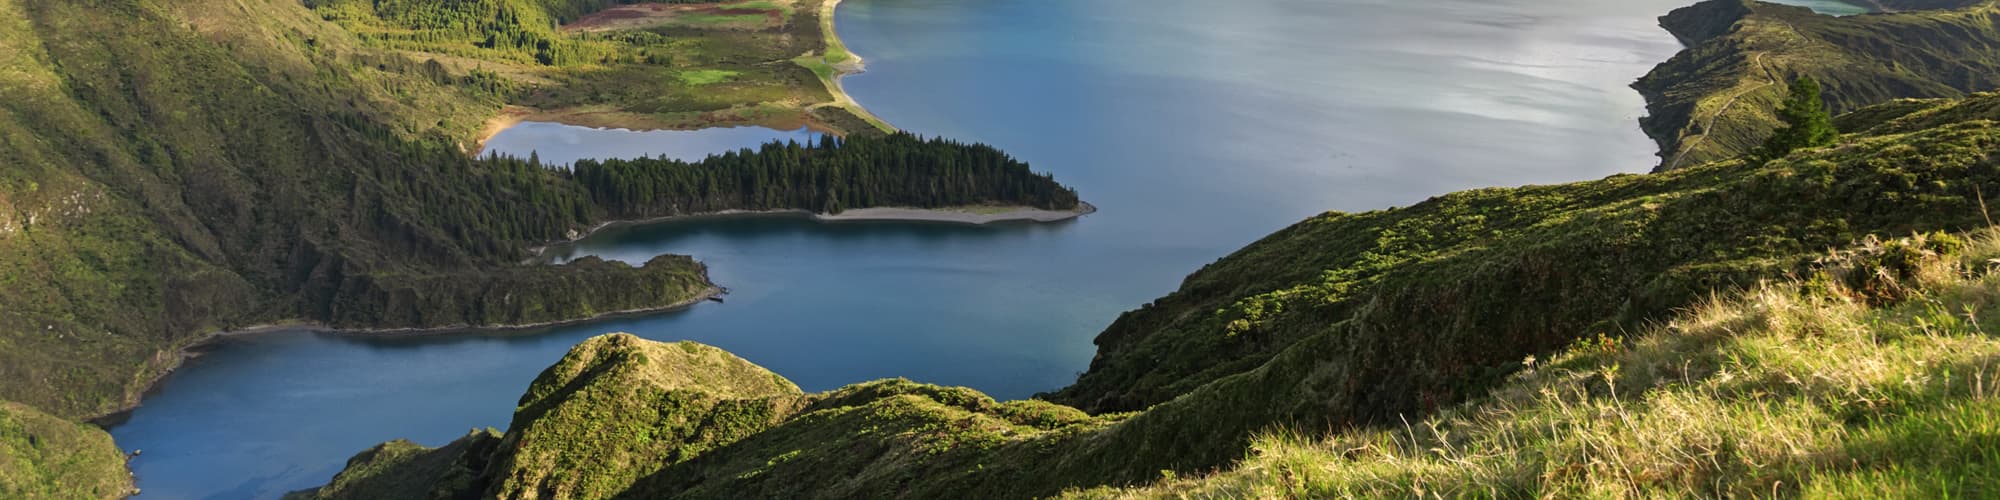 Randonnée aux Açores : trek et voyage © cinoby